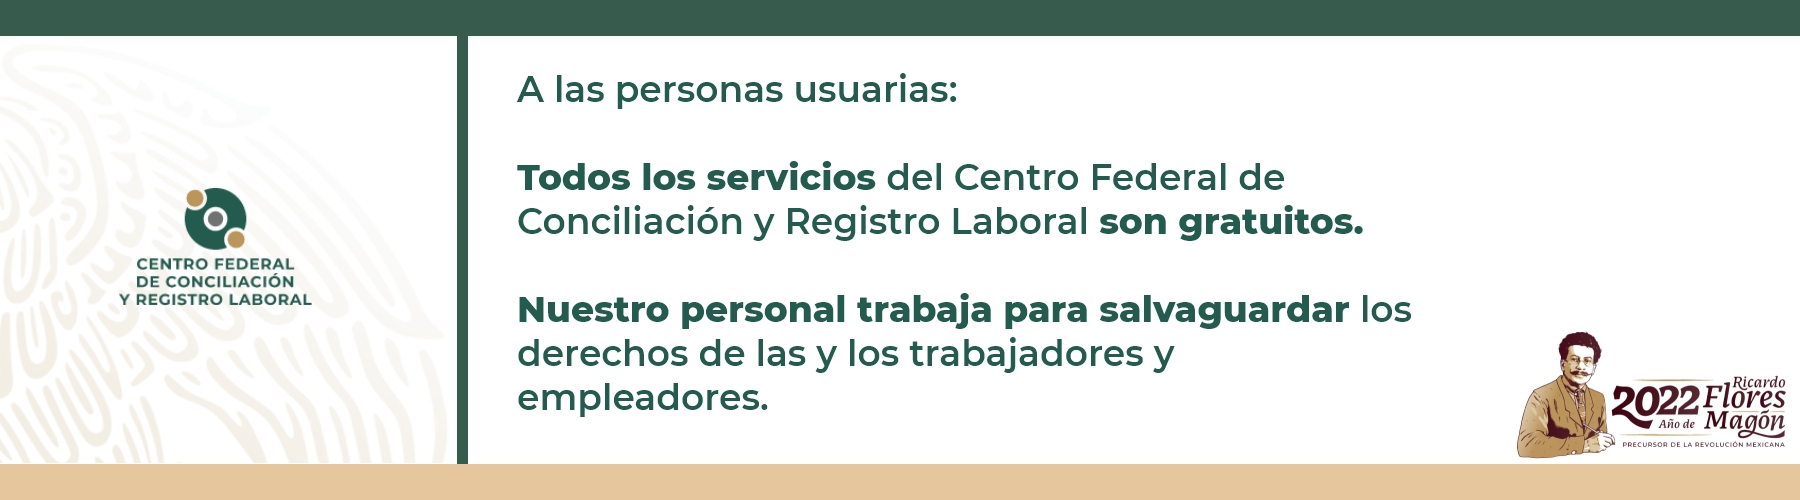 Todos los servicios del Centro Federal de Conciliación y Registro Laboral son gratuitos.